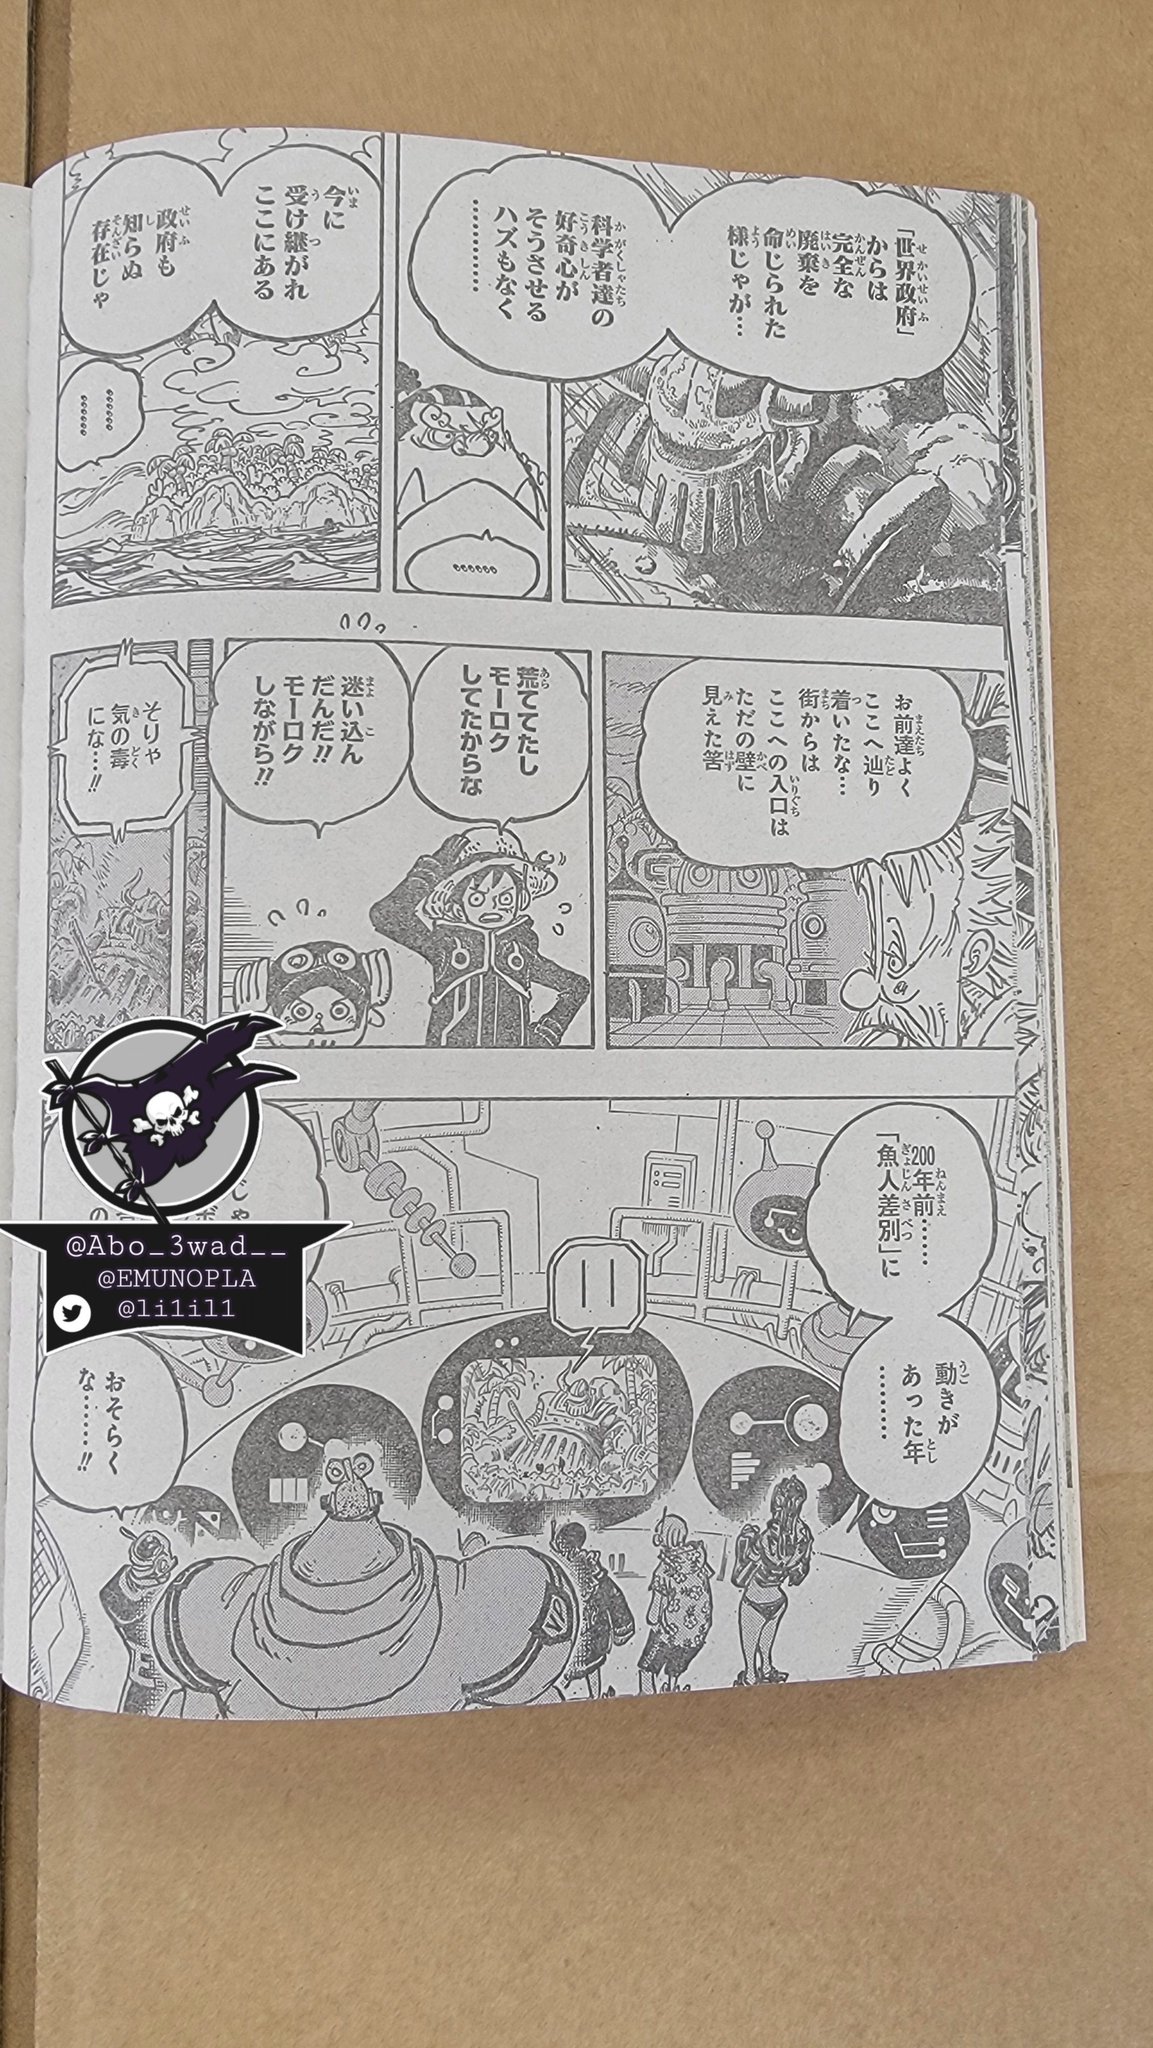 One Piece Episode 1067: Release date & spoilers - Dexerto